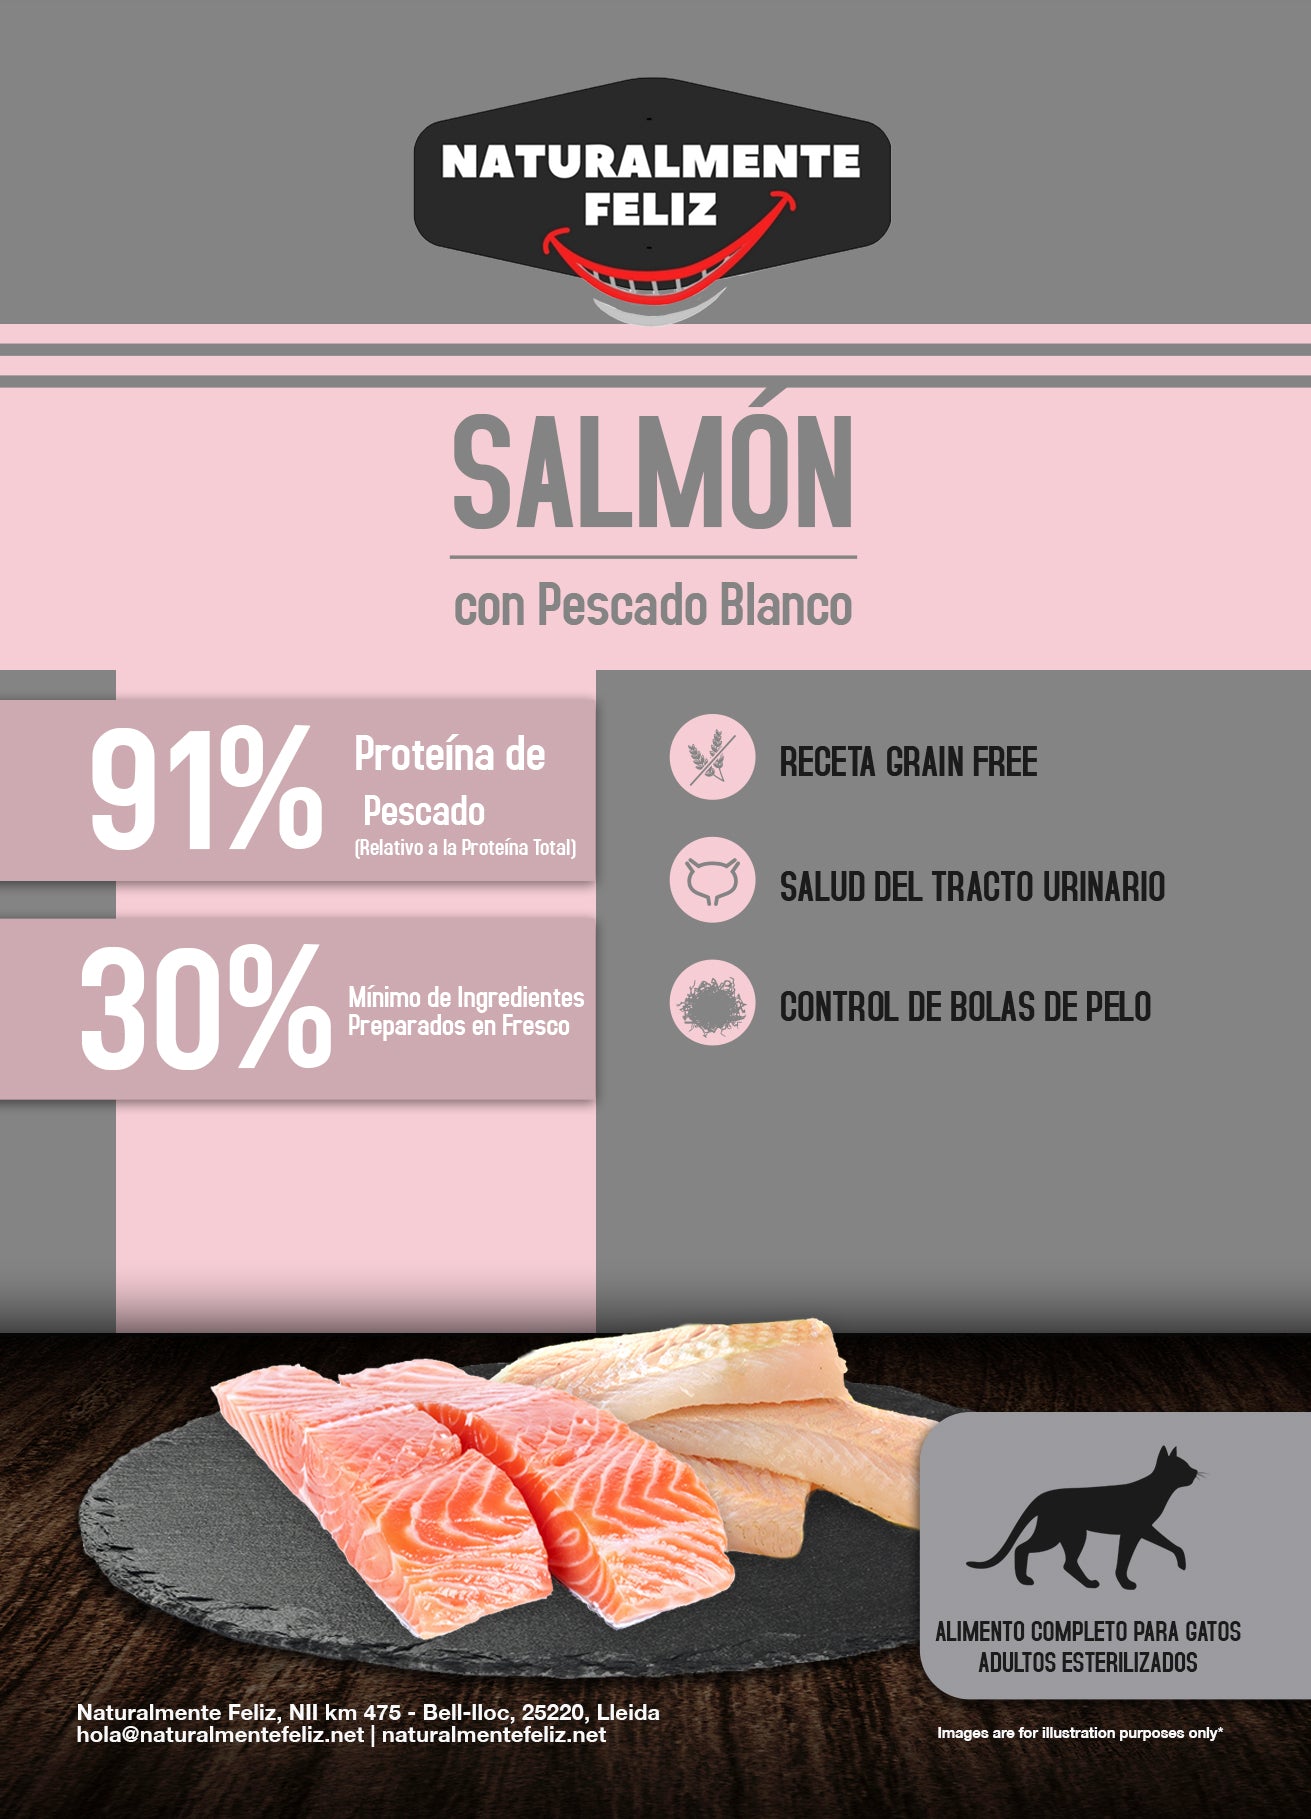 Pienso para gatos de salmón y pescado blanco 100% natural: la mejor opción para el bienestar y la salud de tu gato (1,5kg)